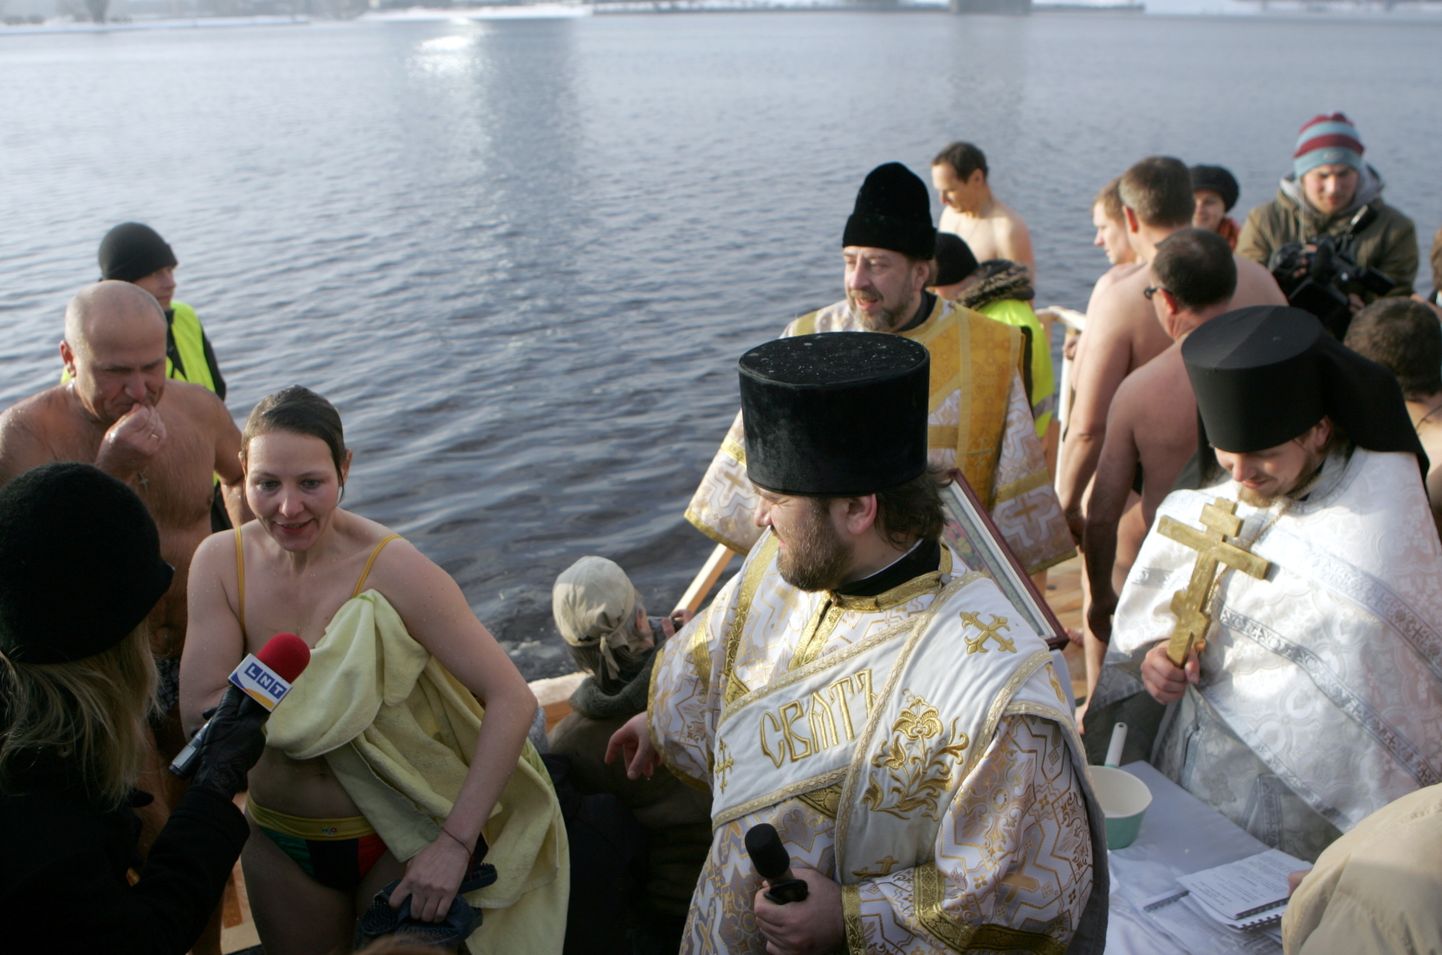 Ticīgie stāv rindā, lai pēc Lielās ūdens iesvētīšanas kārtas, gremdētos iesvētītajos Daugavas ūdeņos 11.novembra krastmalā iepretim Lielā Kristapa statujai